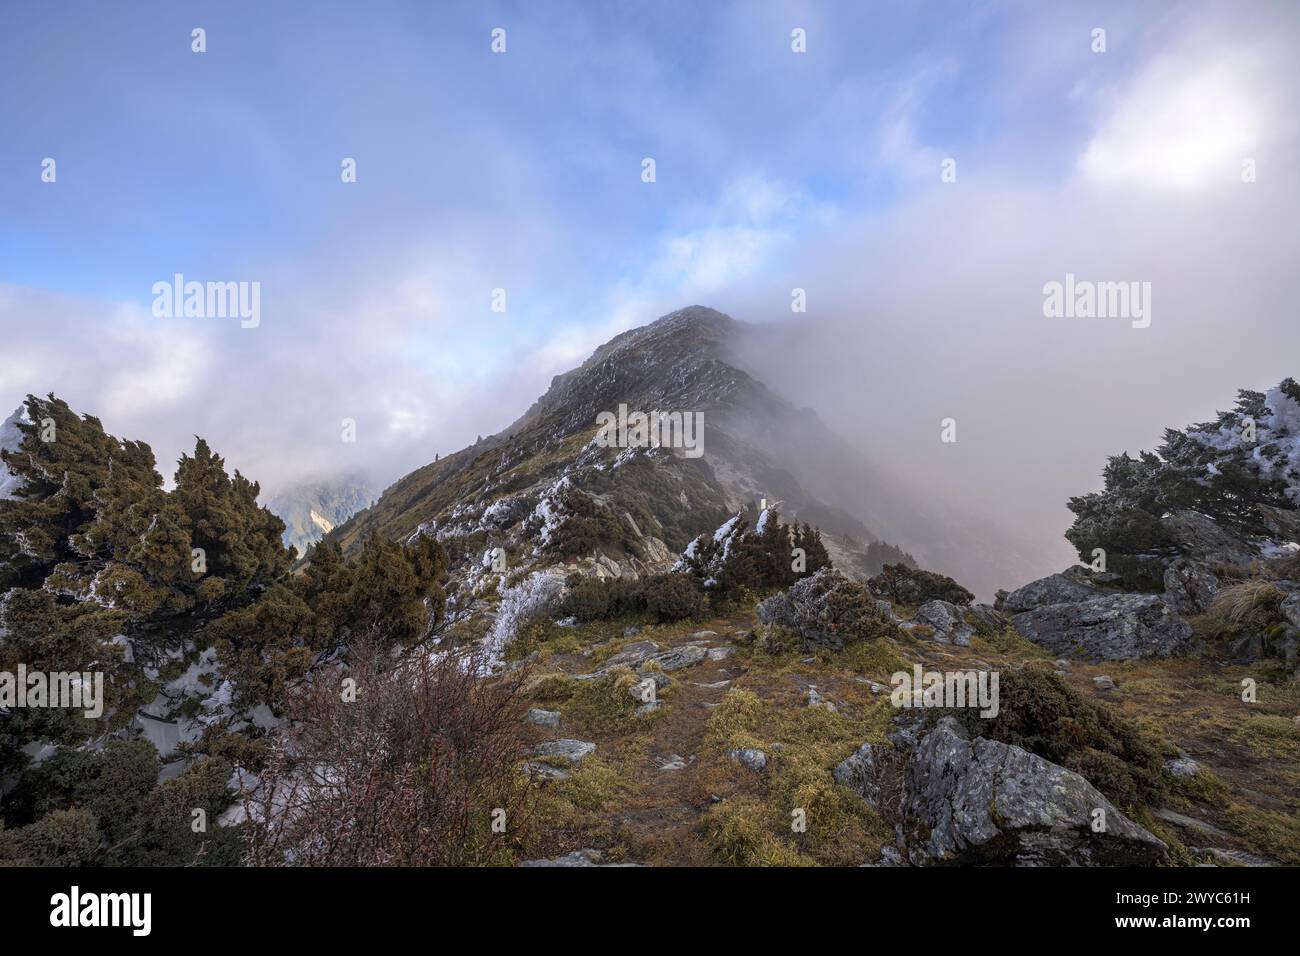 Der Gipfel eines Berges, der kaum durch sich ausbreitende Wolken sichtbar ist, schafft eine ätherische Landschaft voller Geheimnisse Stockfoto